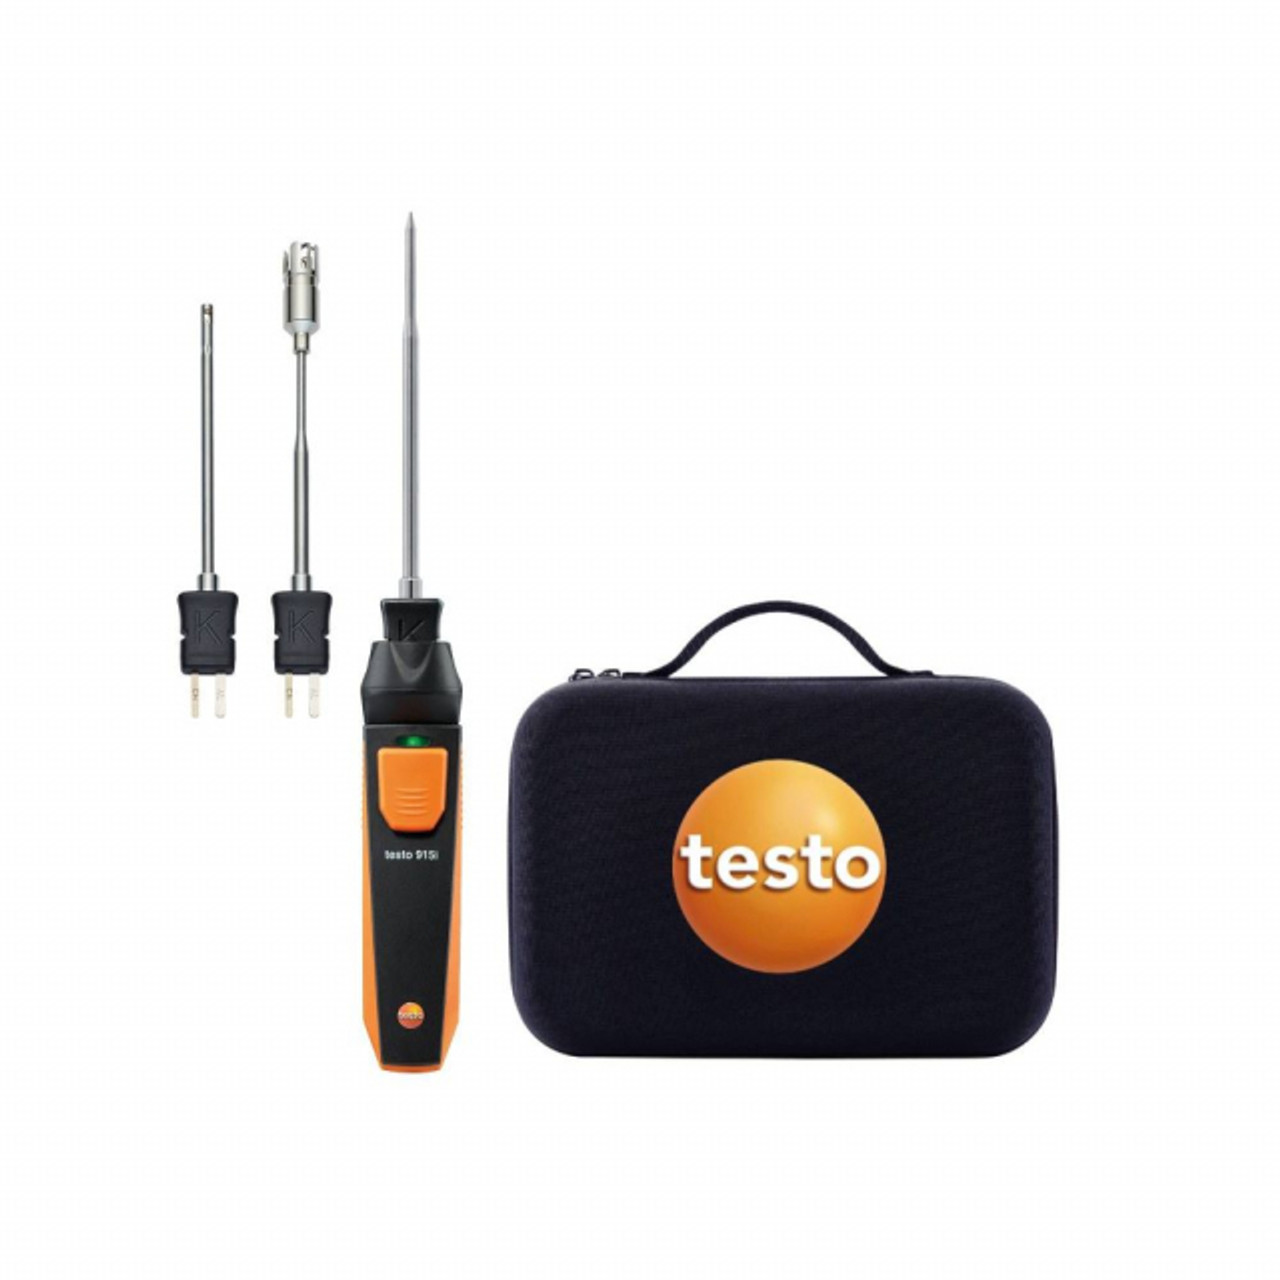 Testo 915i Flexible - Thermometer with Flexible Probe (0563 4915)